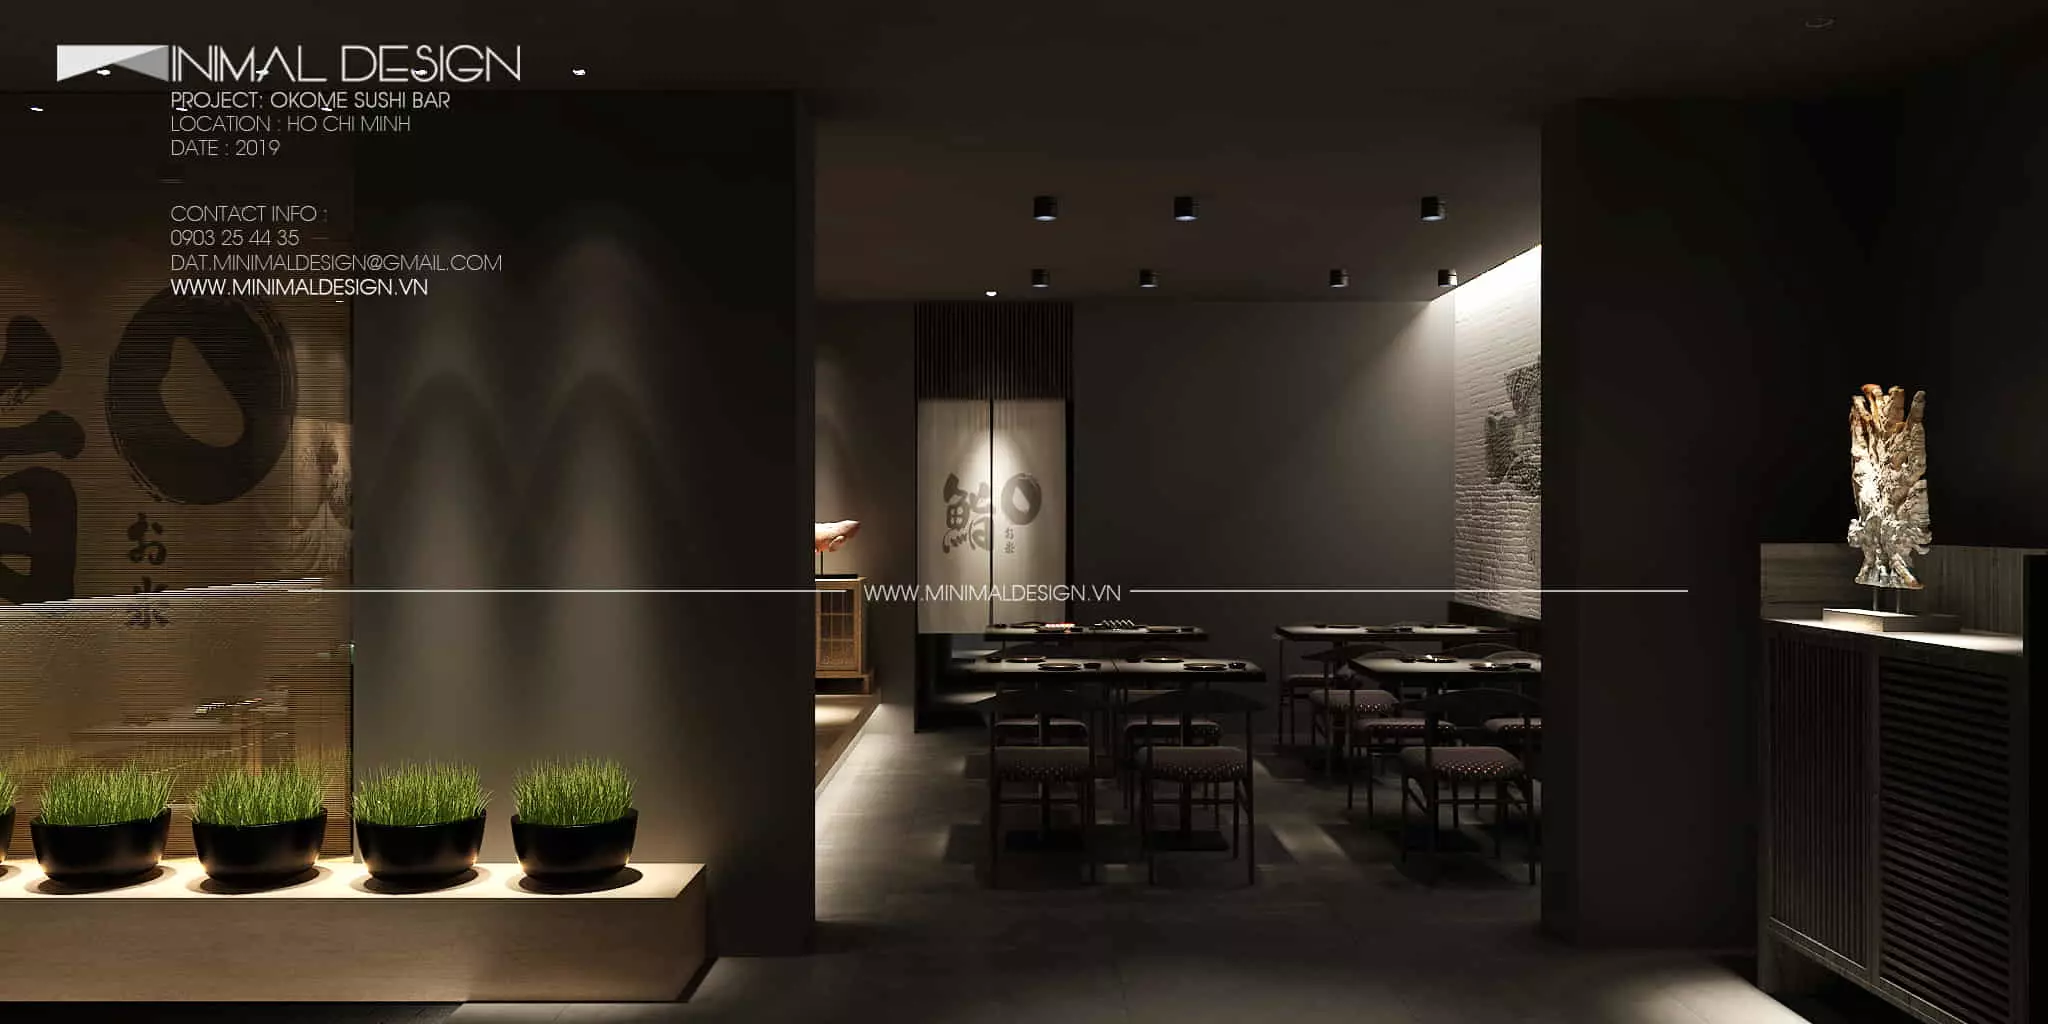 thiết kế nội thất nhà hàng Okome Sushi Bar